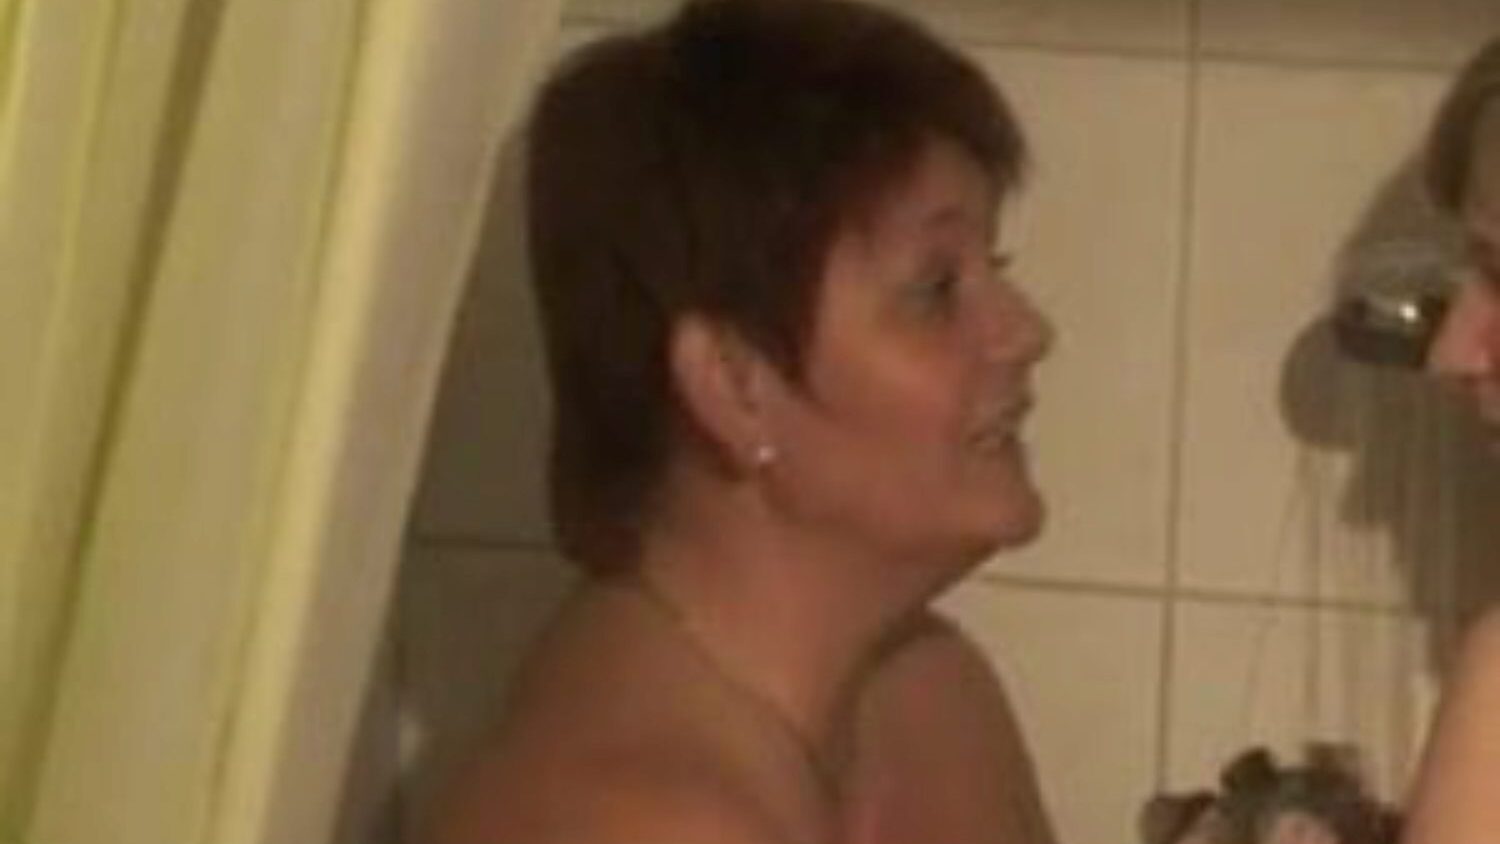 due ragazze bisessuali che fanno la doccia: video porno lesbo gratis 76 - xhamster guarda 2 ragazze bisessuali che fanno la doccia nella scena del film fare l'amore gratis su xhamster, con la collezione prepotente di lesbiche tedesche, madre mi piacerebbe scopare e pornografia bbw sequenze di film